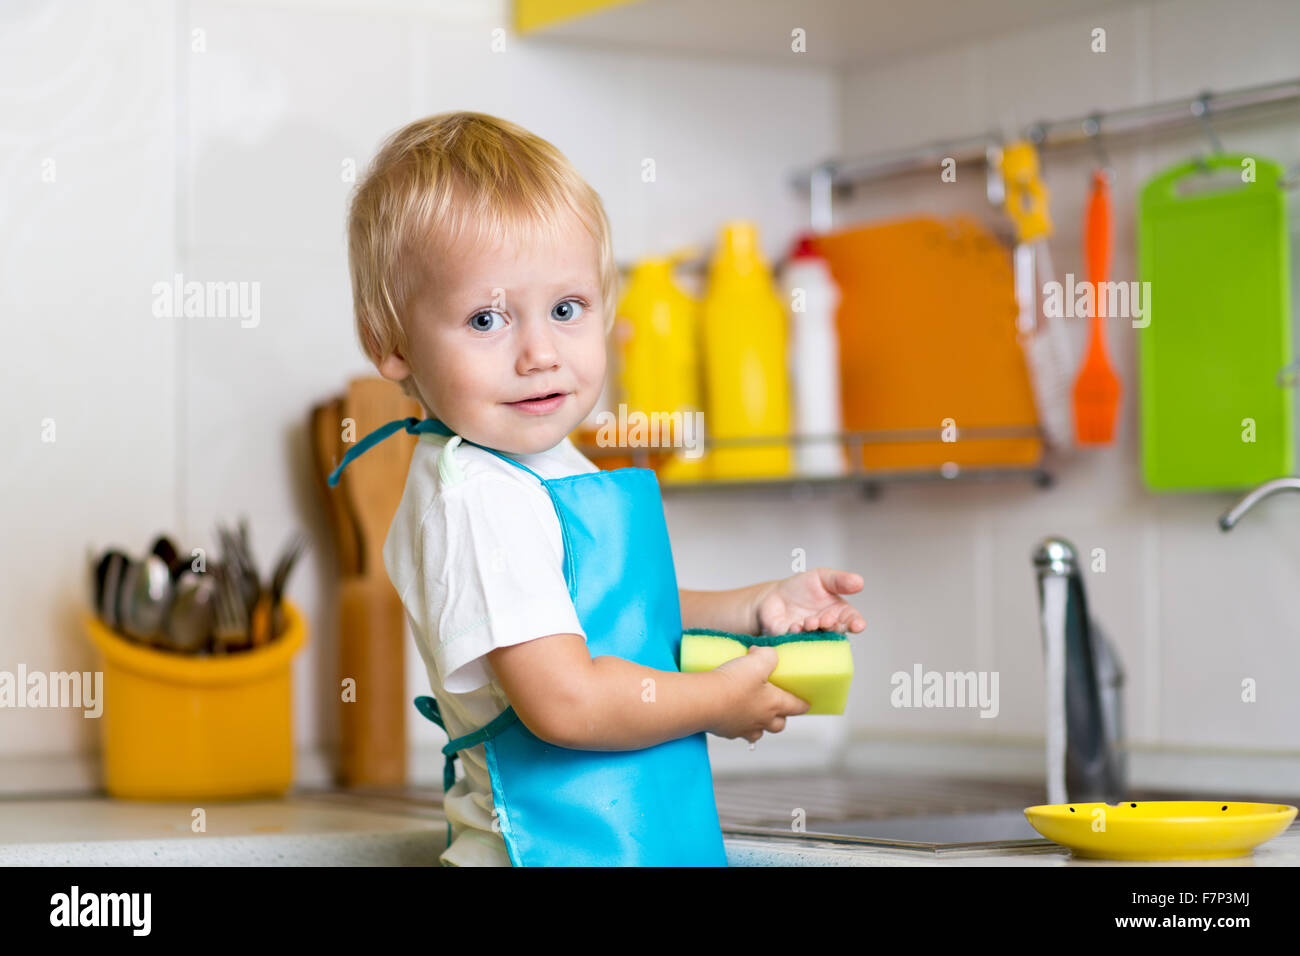 Little boy washing dishes Stock Photo